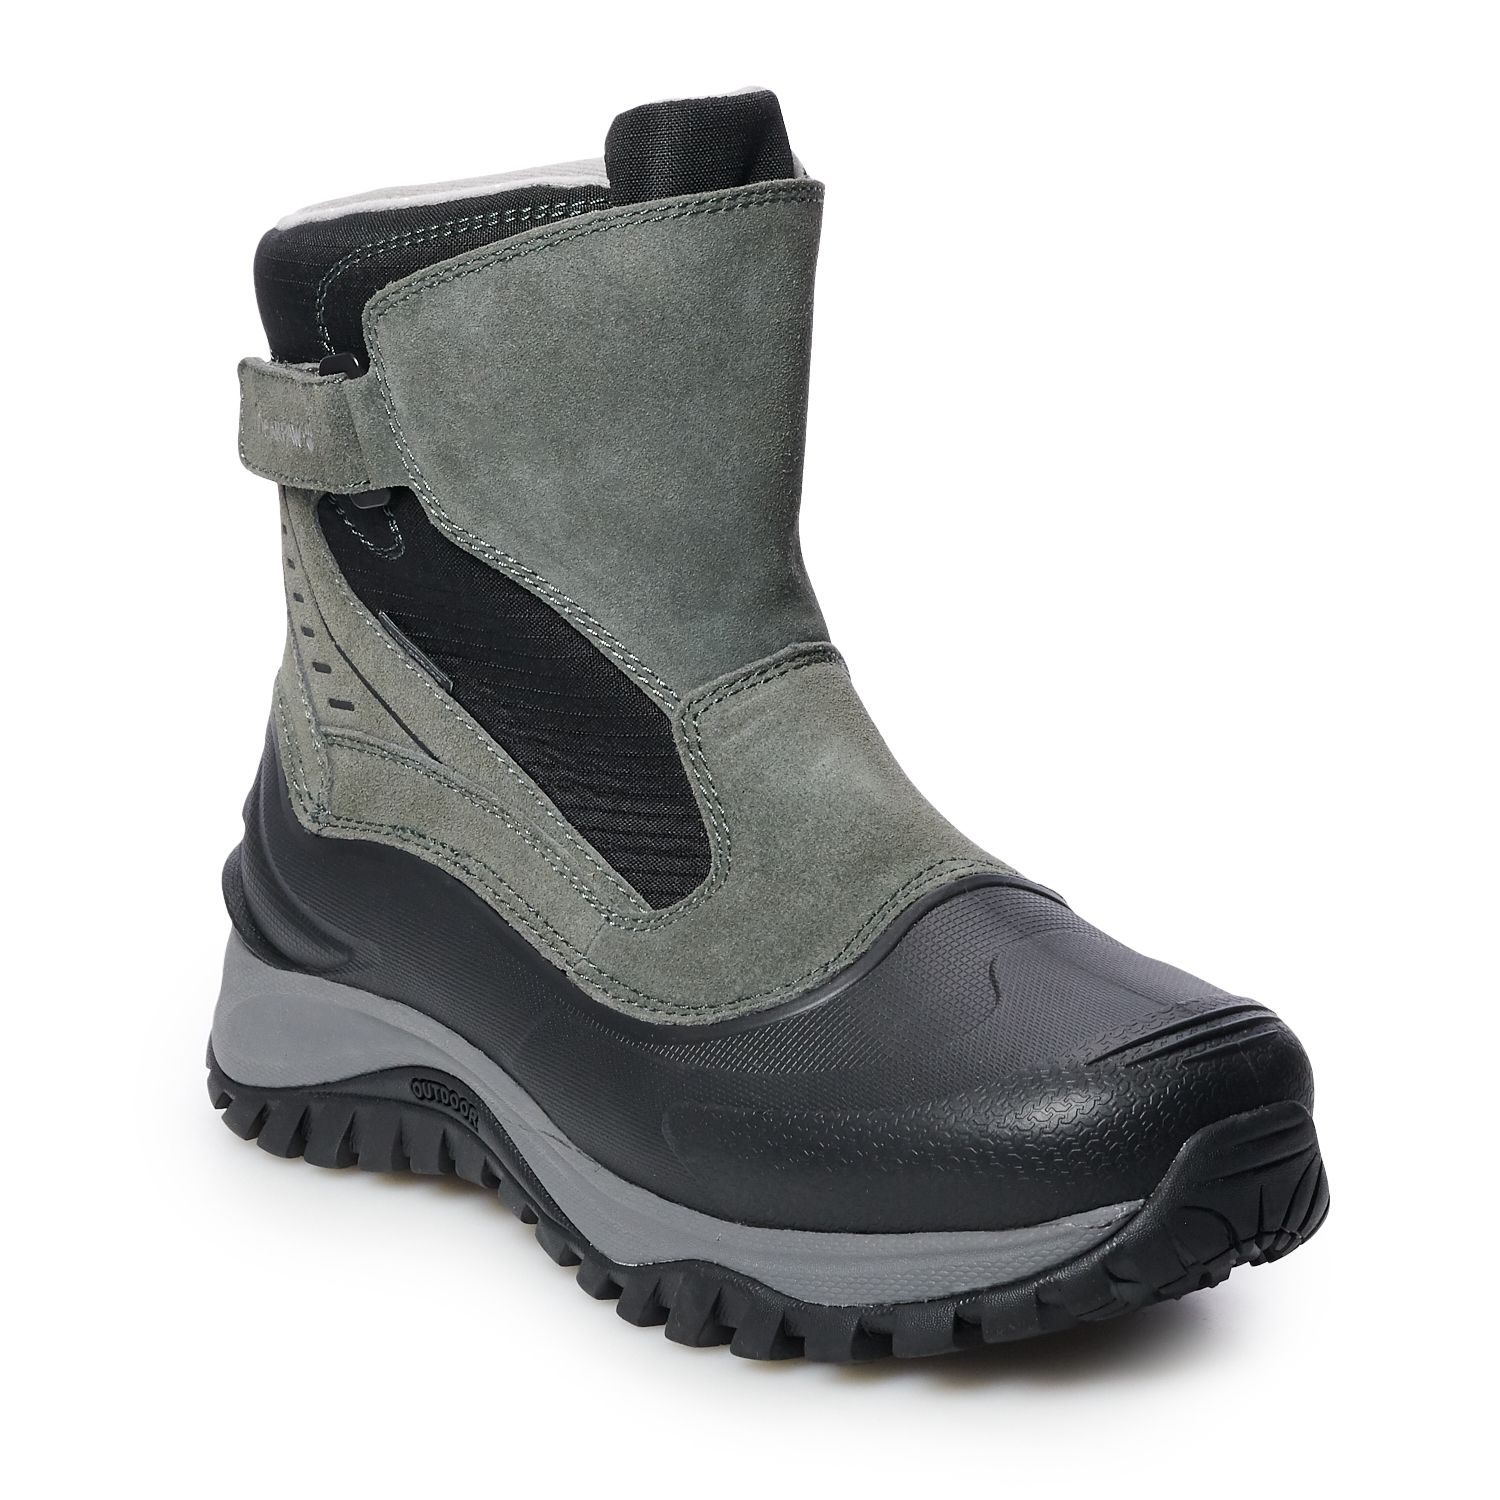 slip on waterproof winter boots